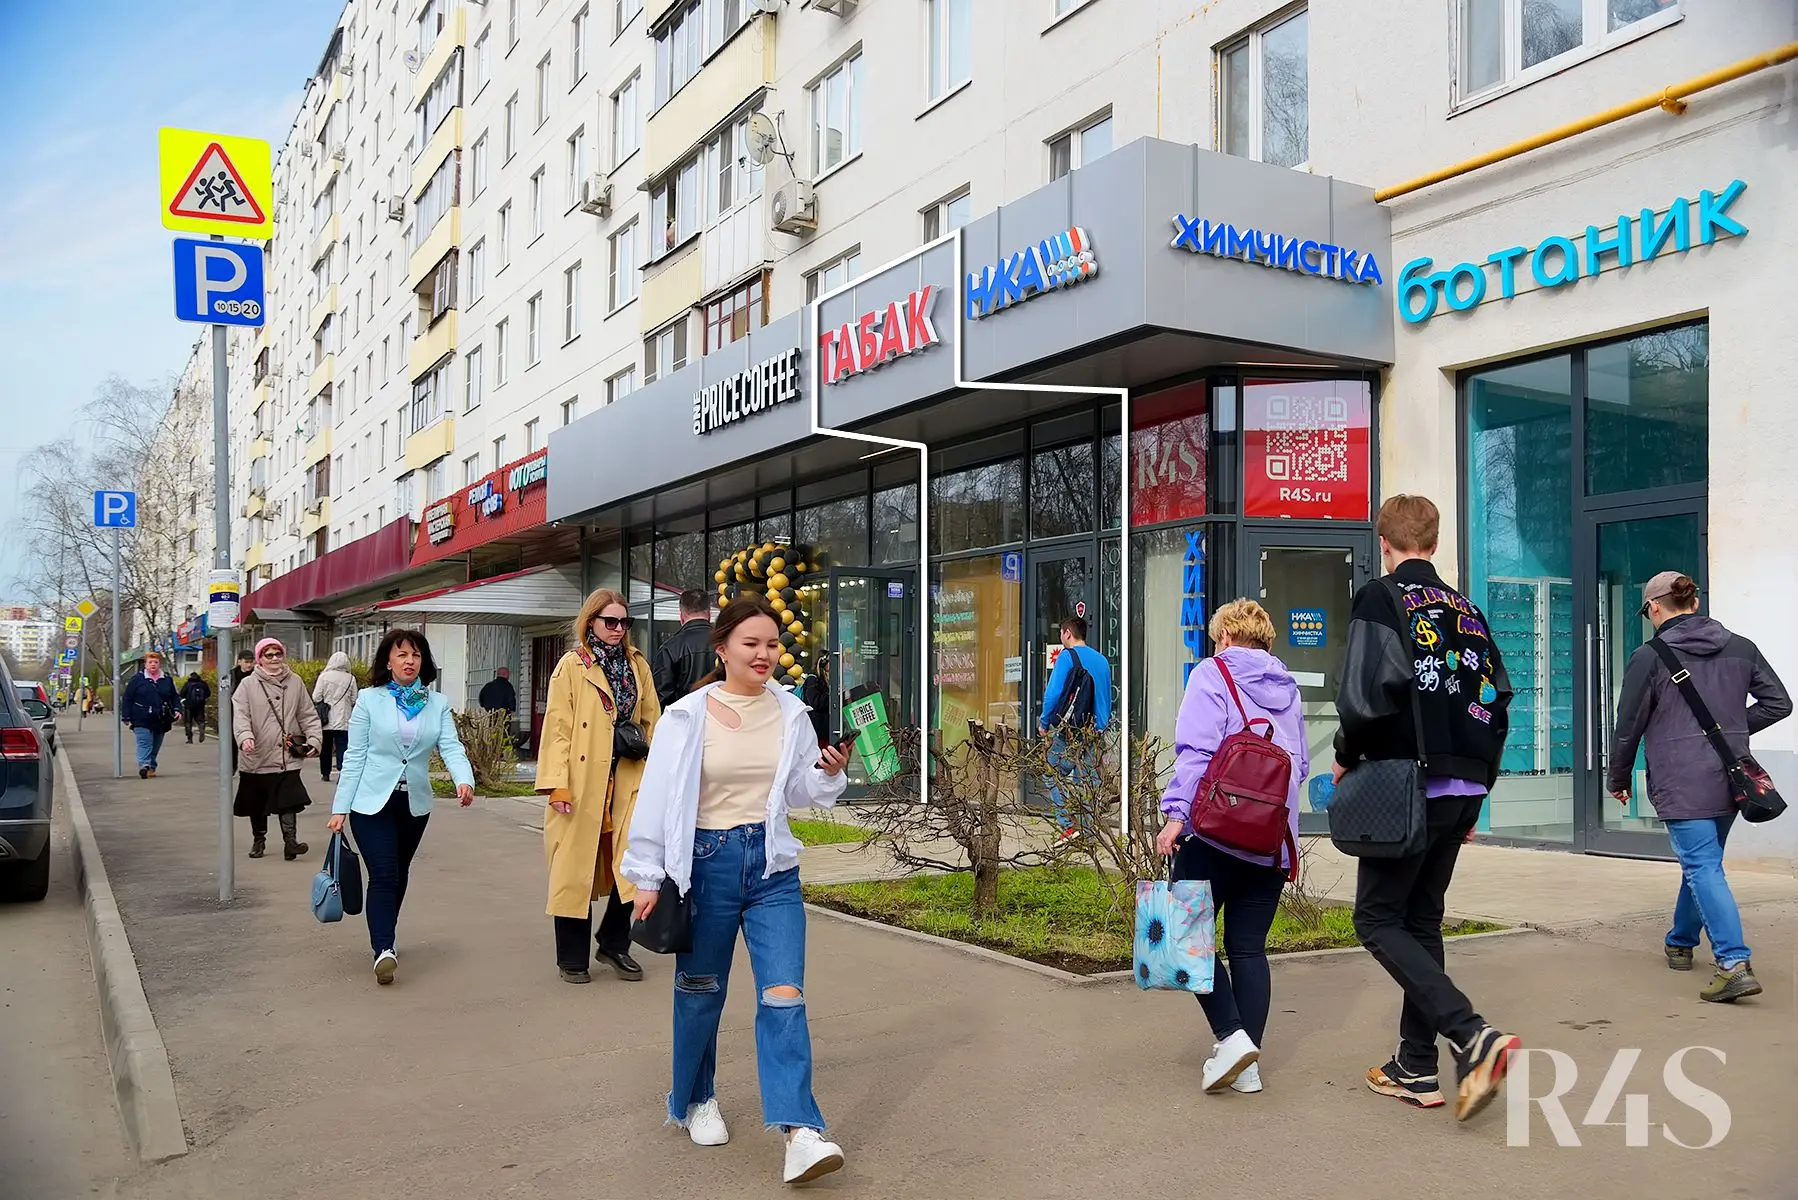 Продажа готового арендного бизнеса площадью 16.5 м2 в Москве: бульвар Яна Райниса, 2к1 R4S | Realty4Sale